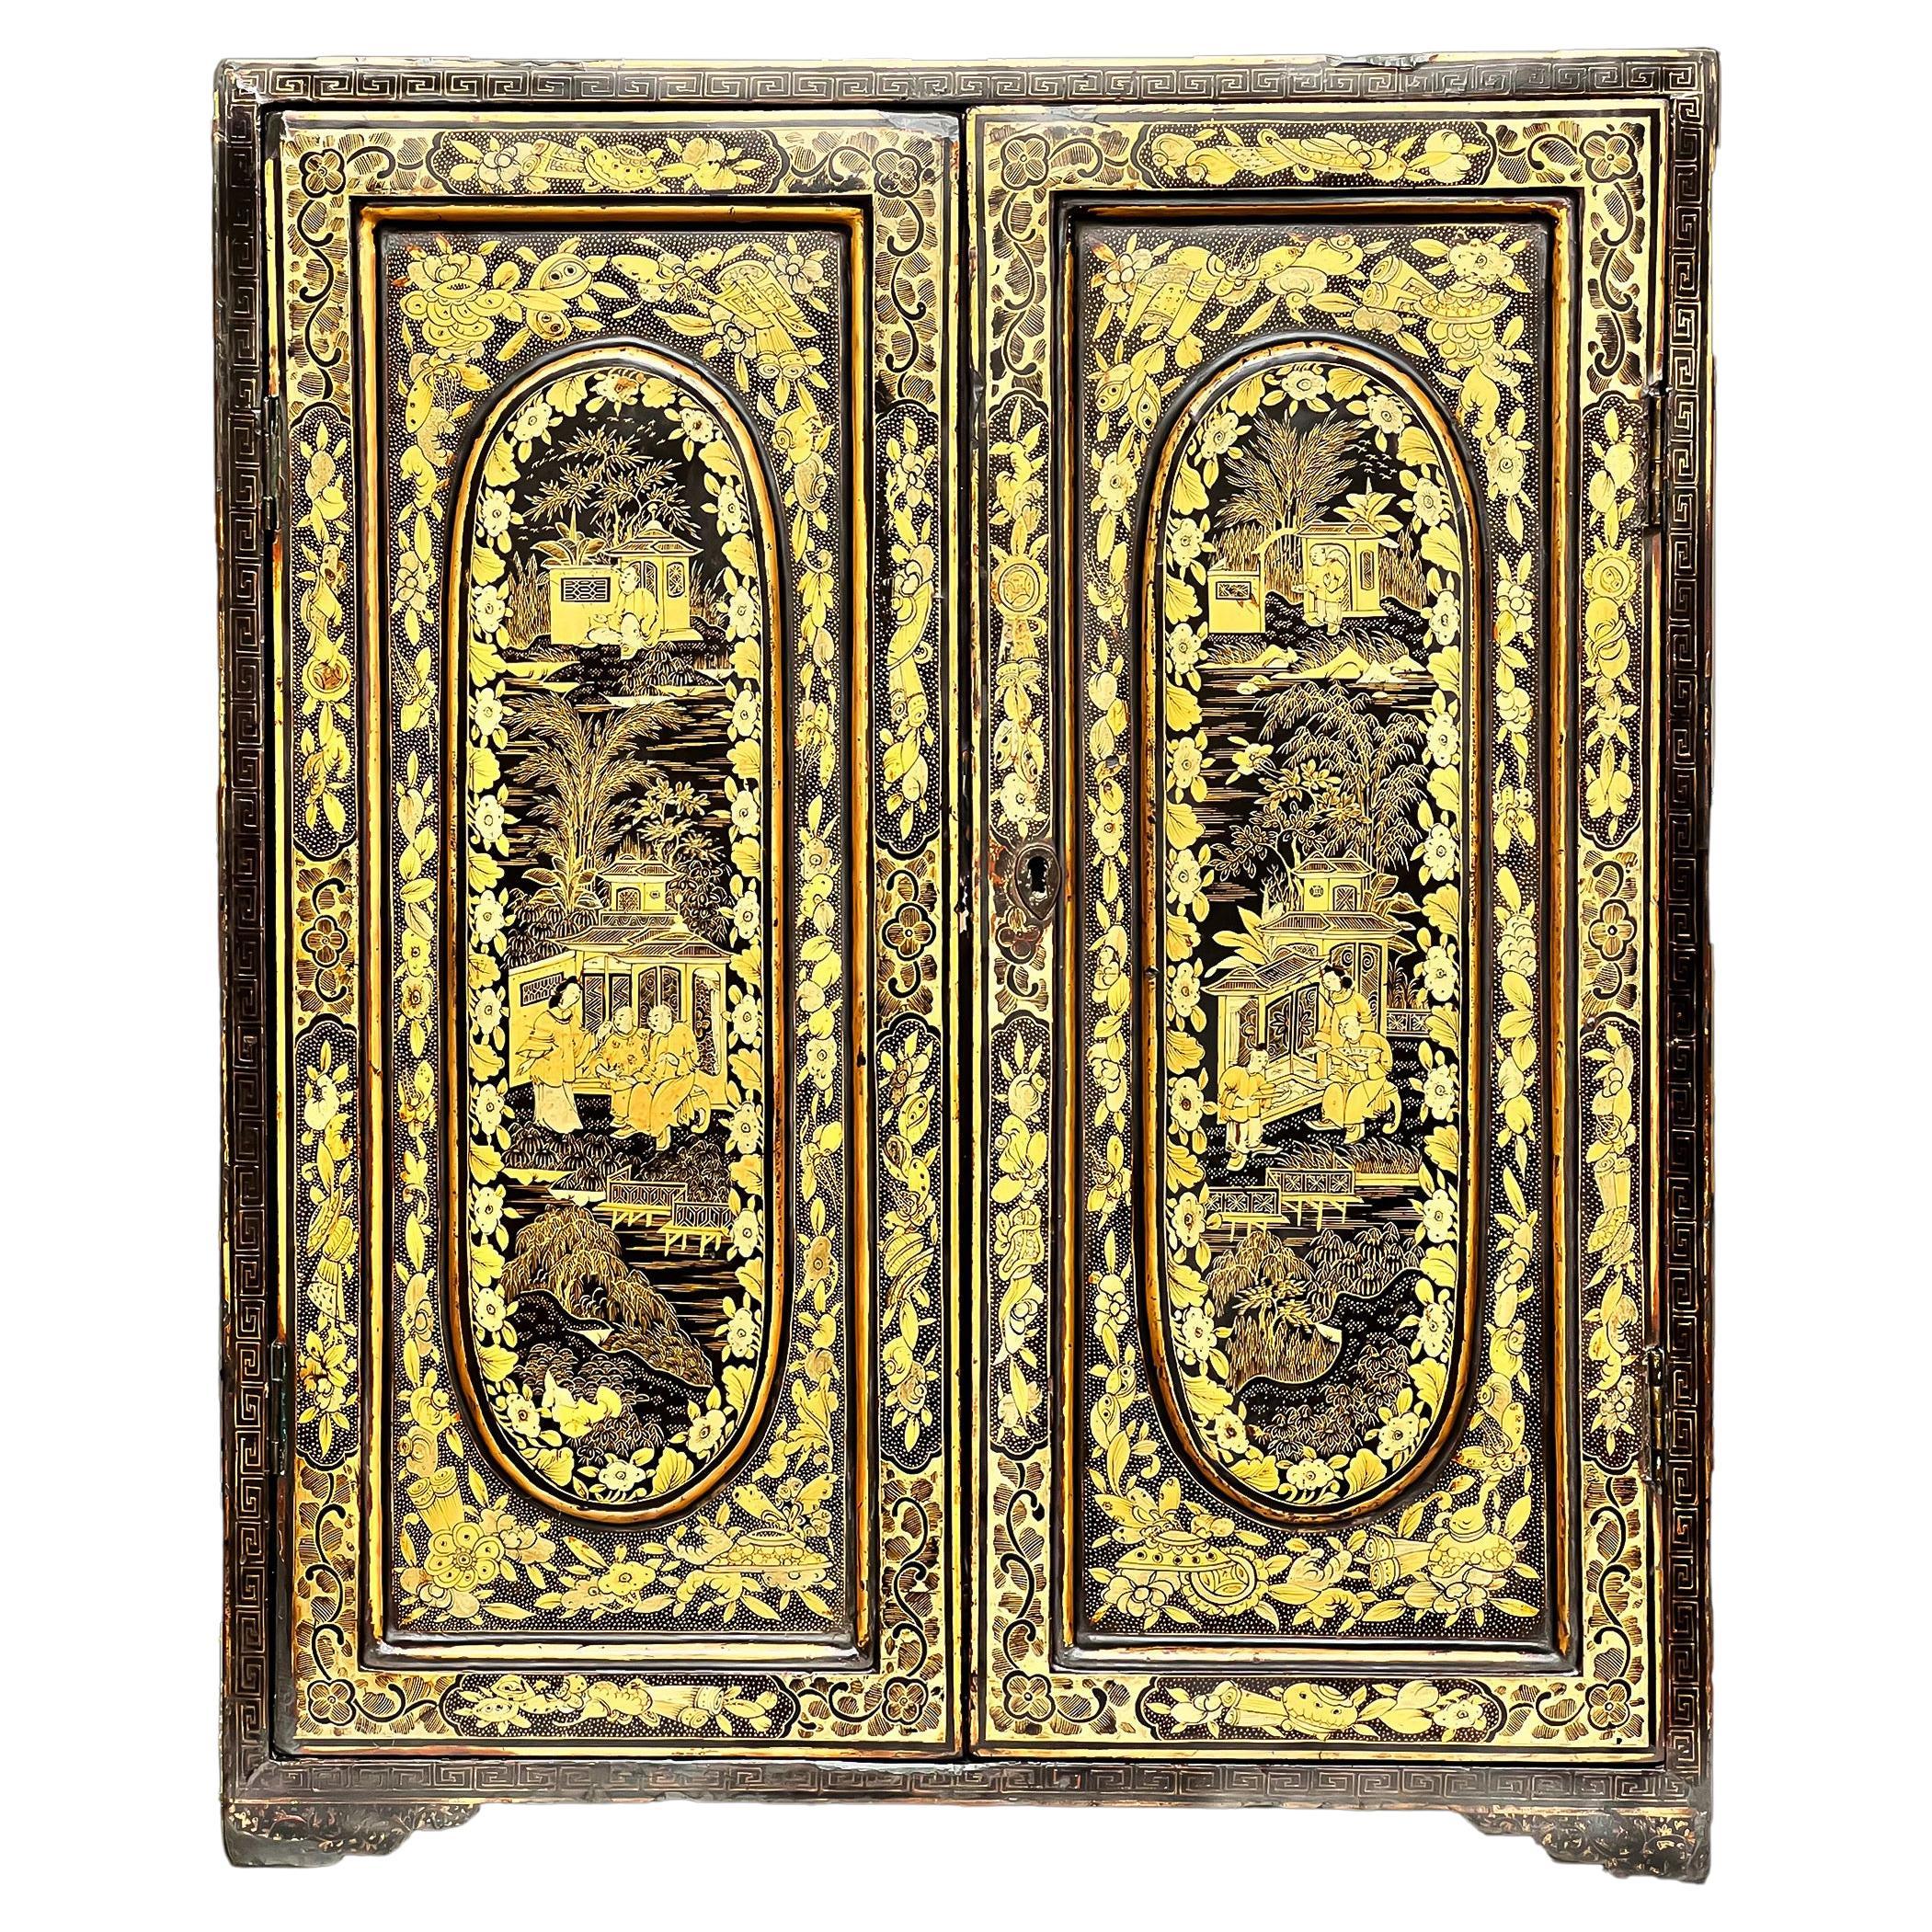 Cabinet Chinoiserie du 19e siècle en laque noire et décoration dorée